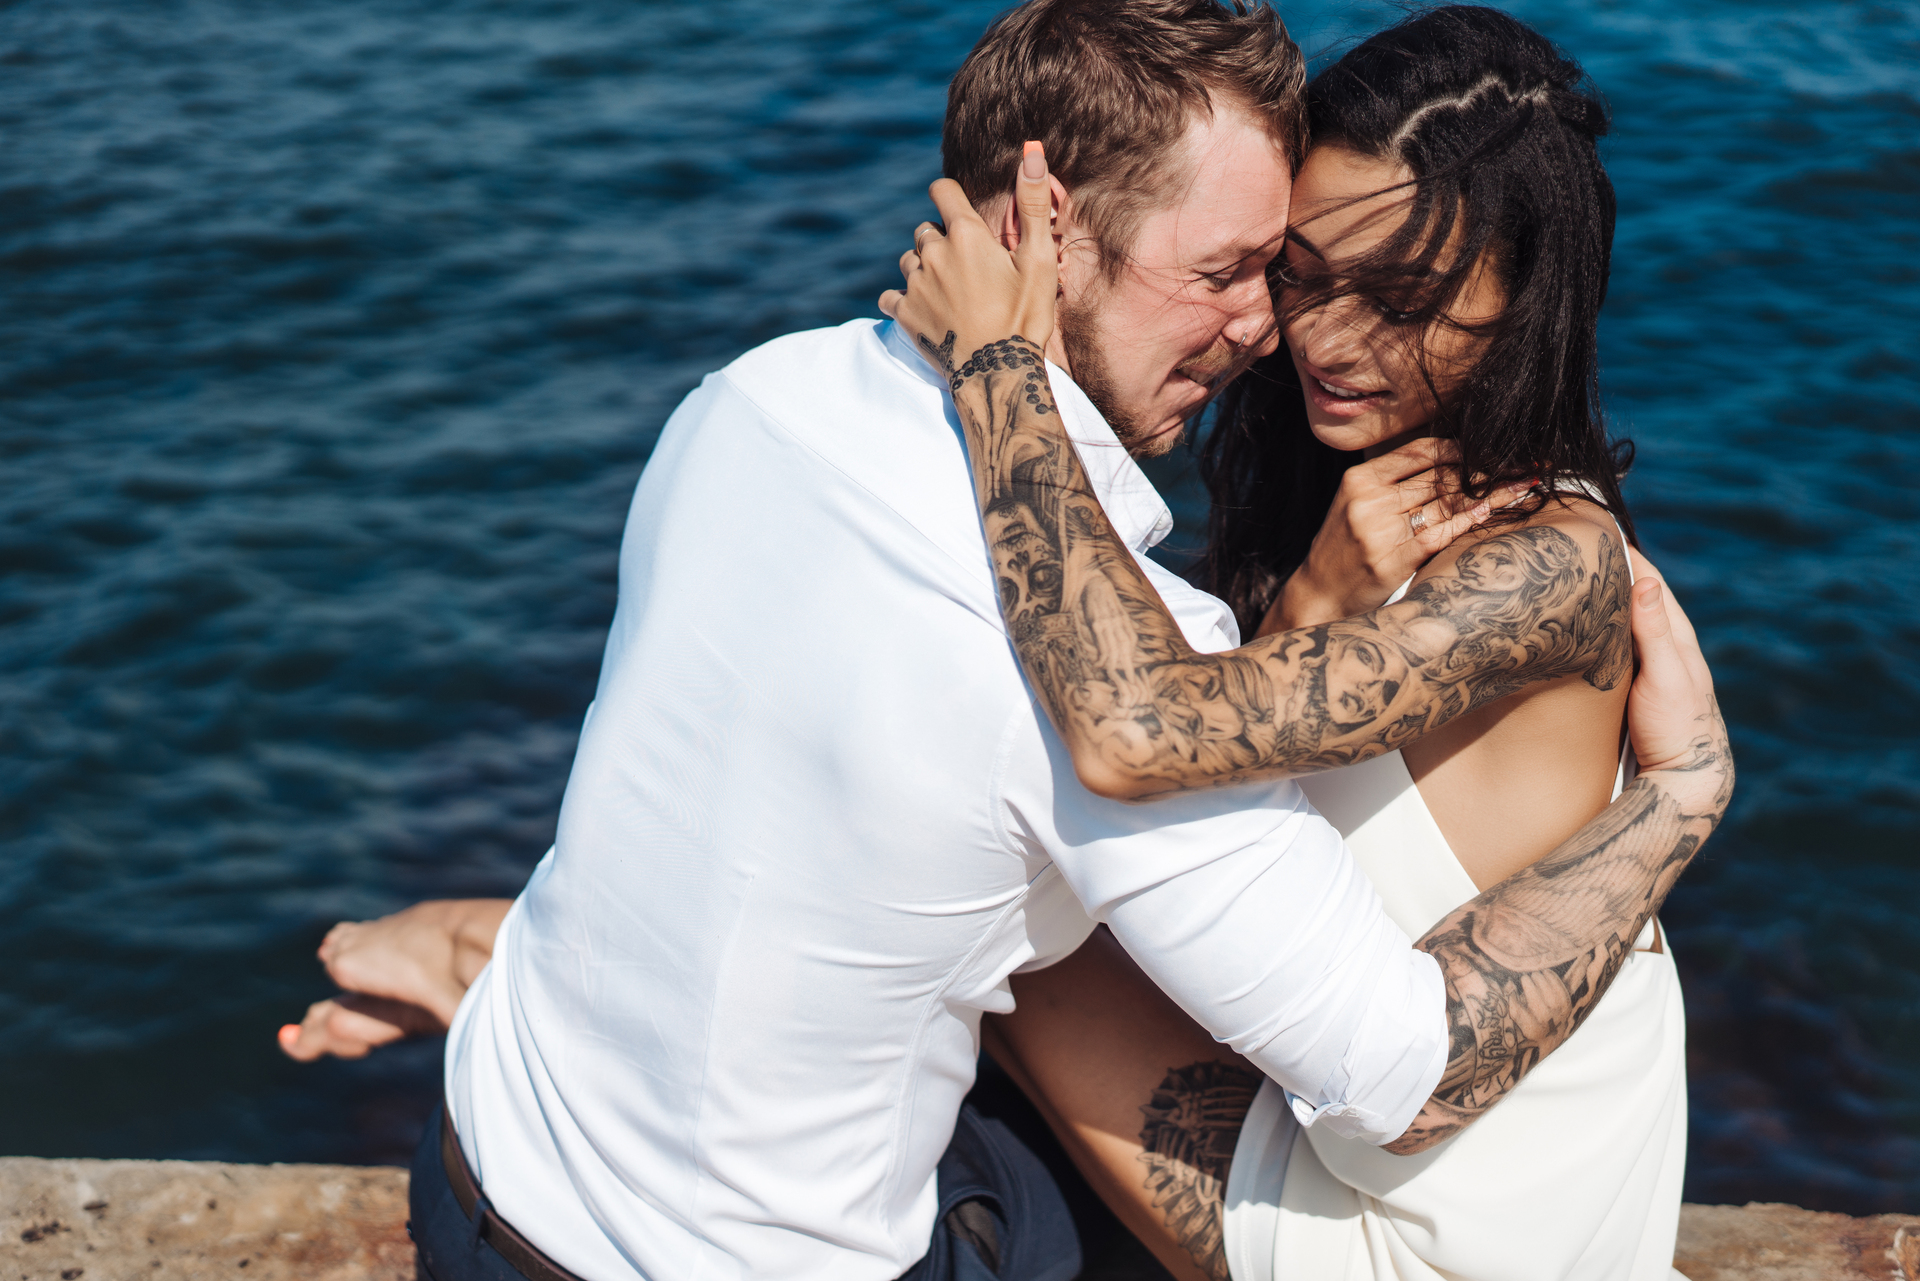 Para w bliskim objęciu wyraża czułość nad brzegiem morza, mężczyzna w białej koszuli i kobieta w białej sukni, oboje z tatuażami ozdabiającymi ich ramiona